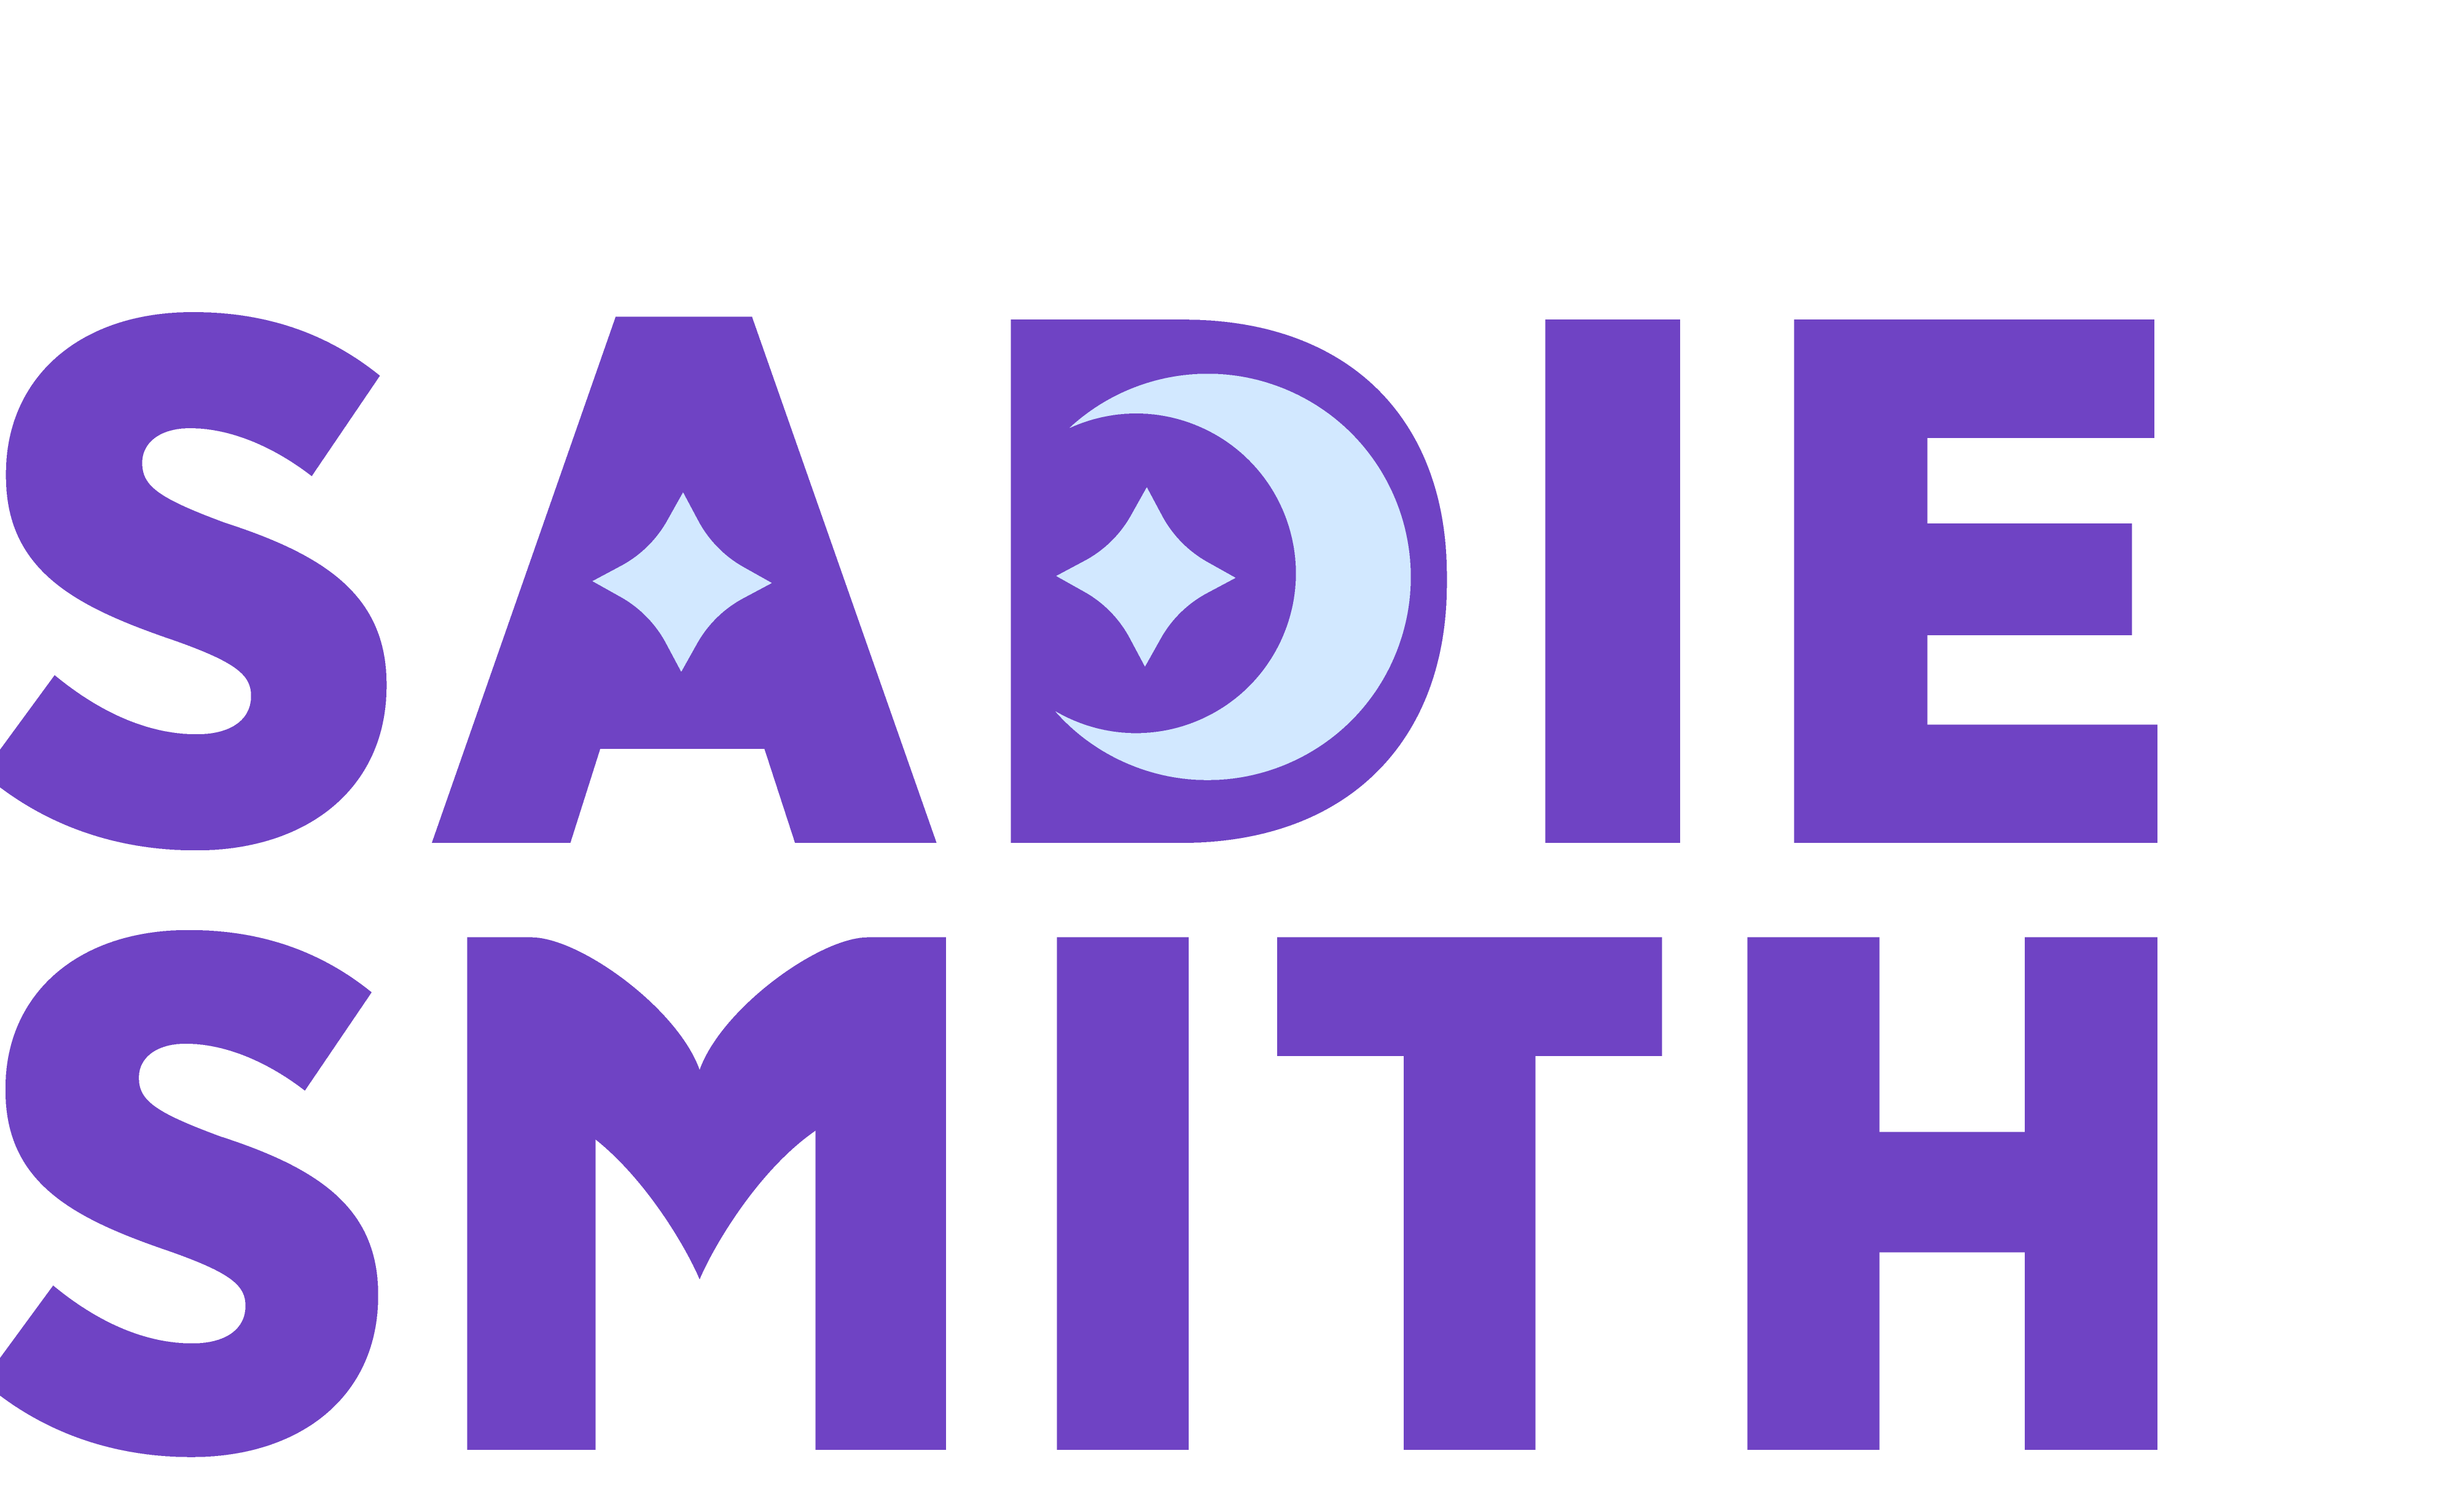 Sadie Smith